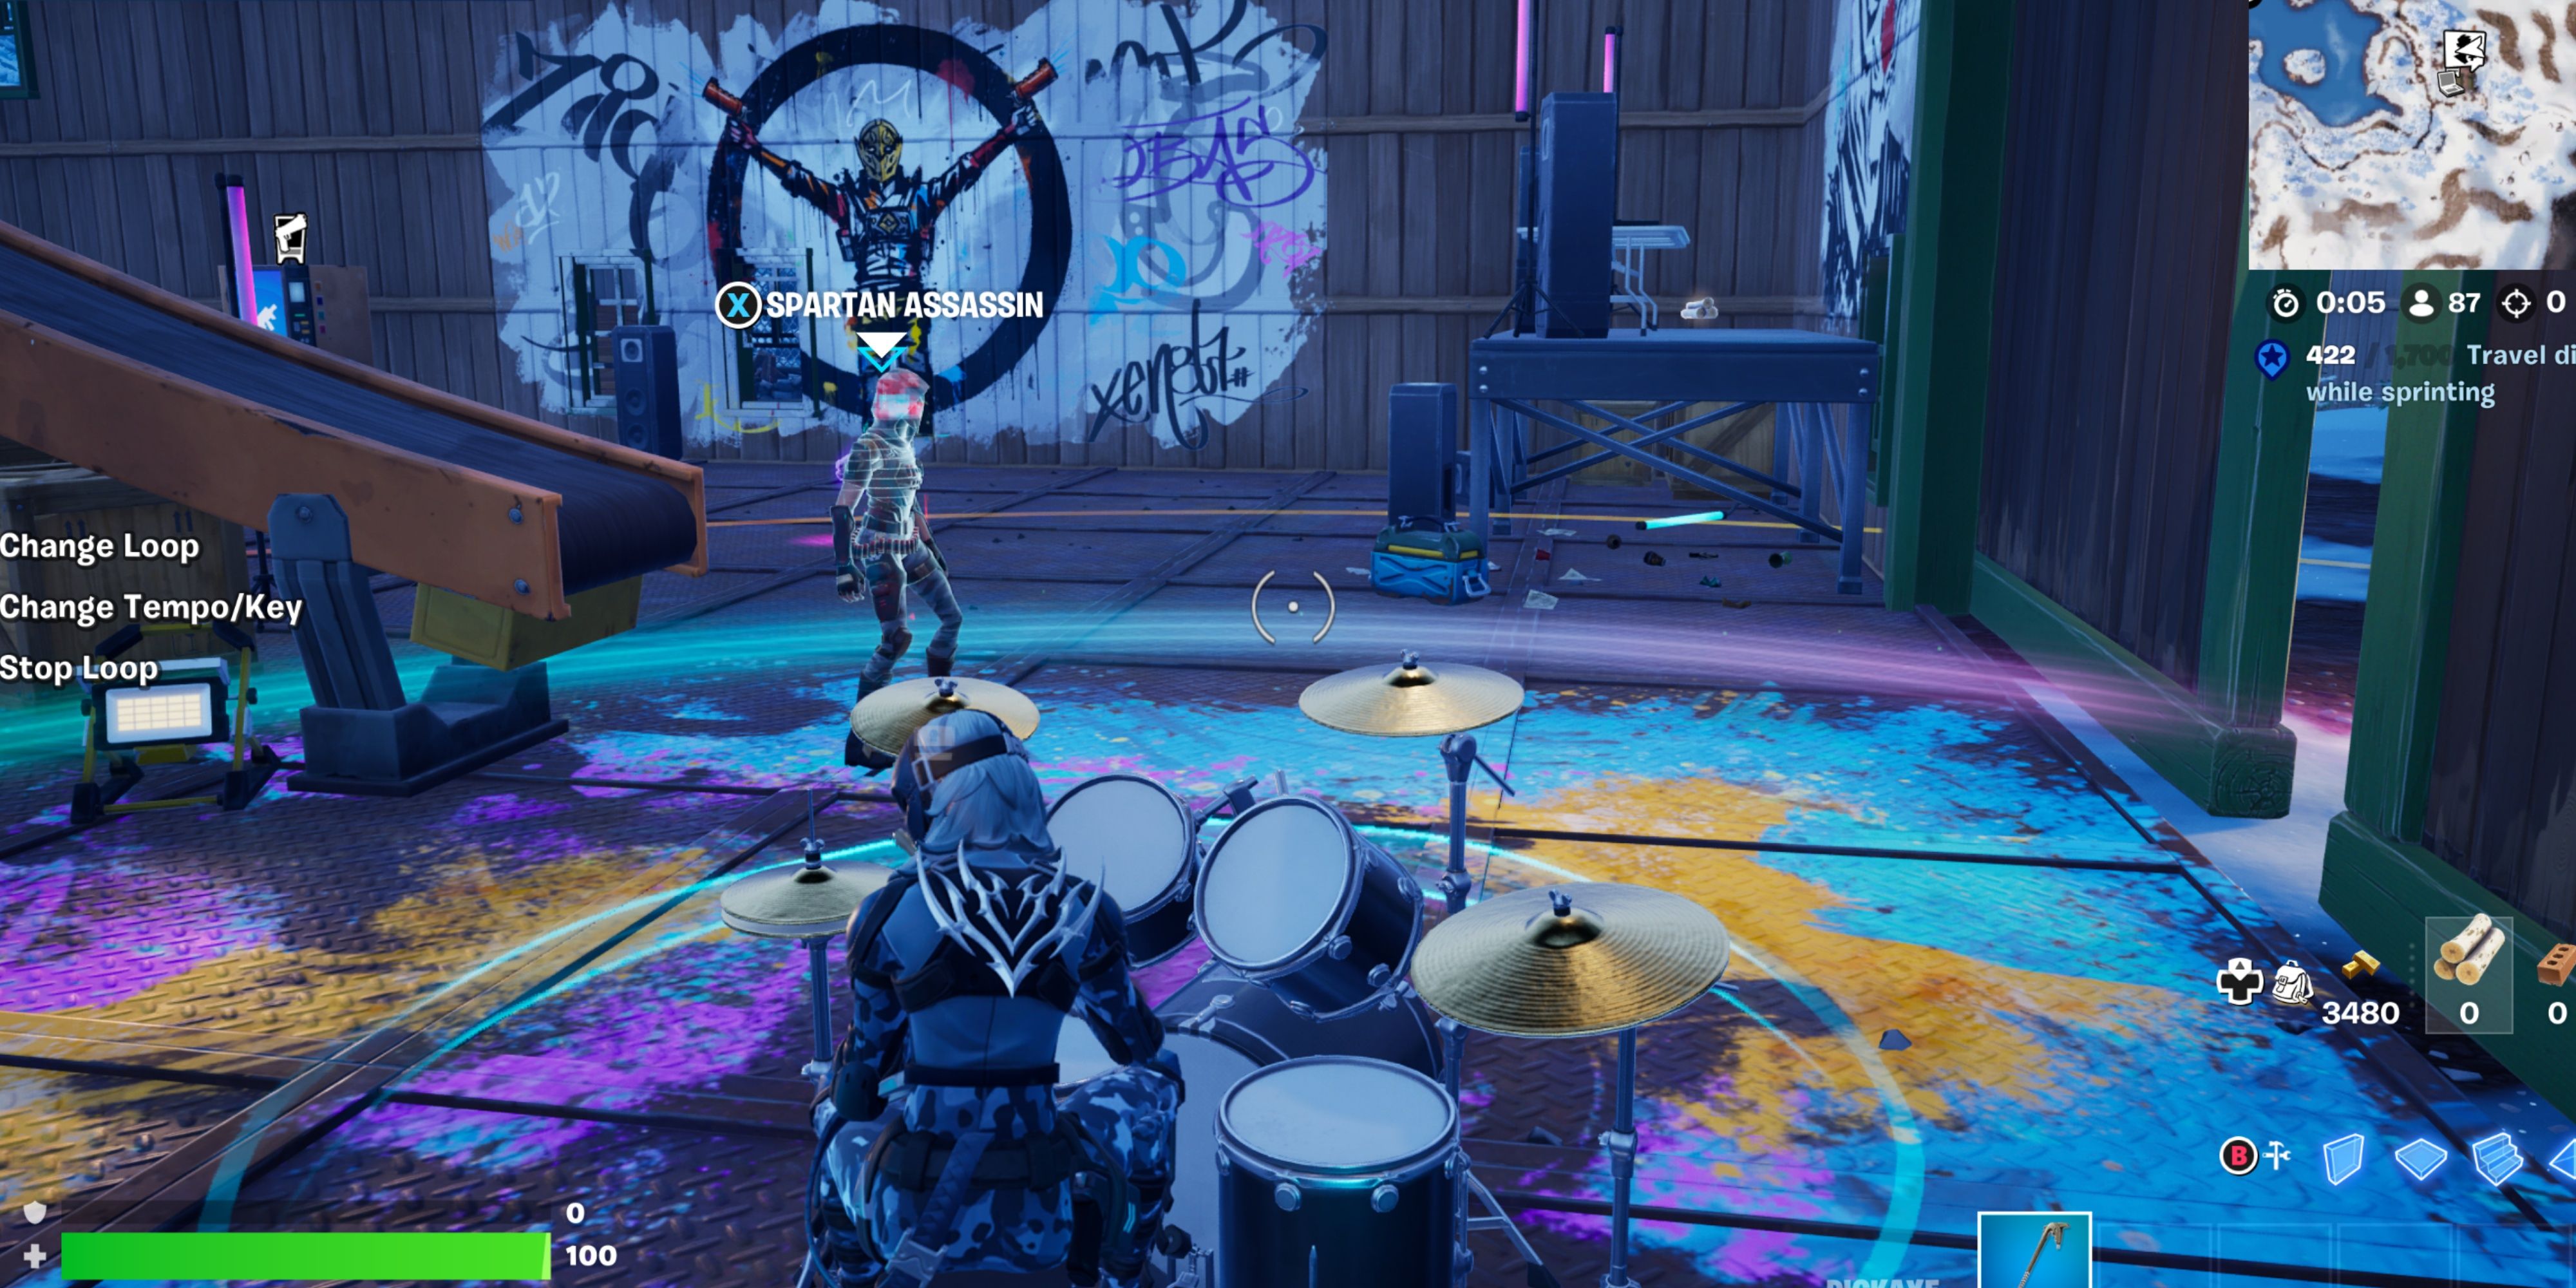 jamming at slumberyard's dance floor